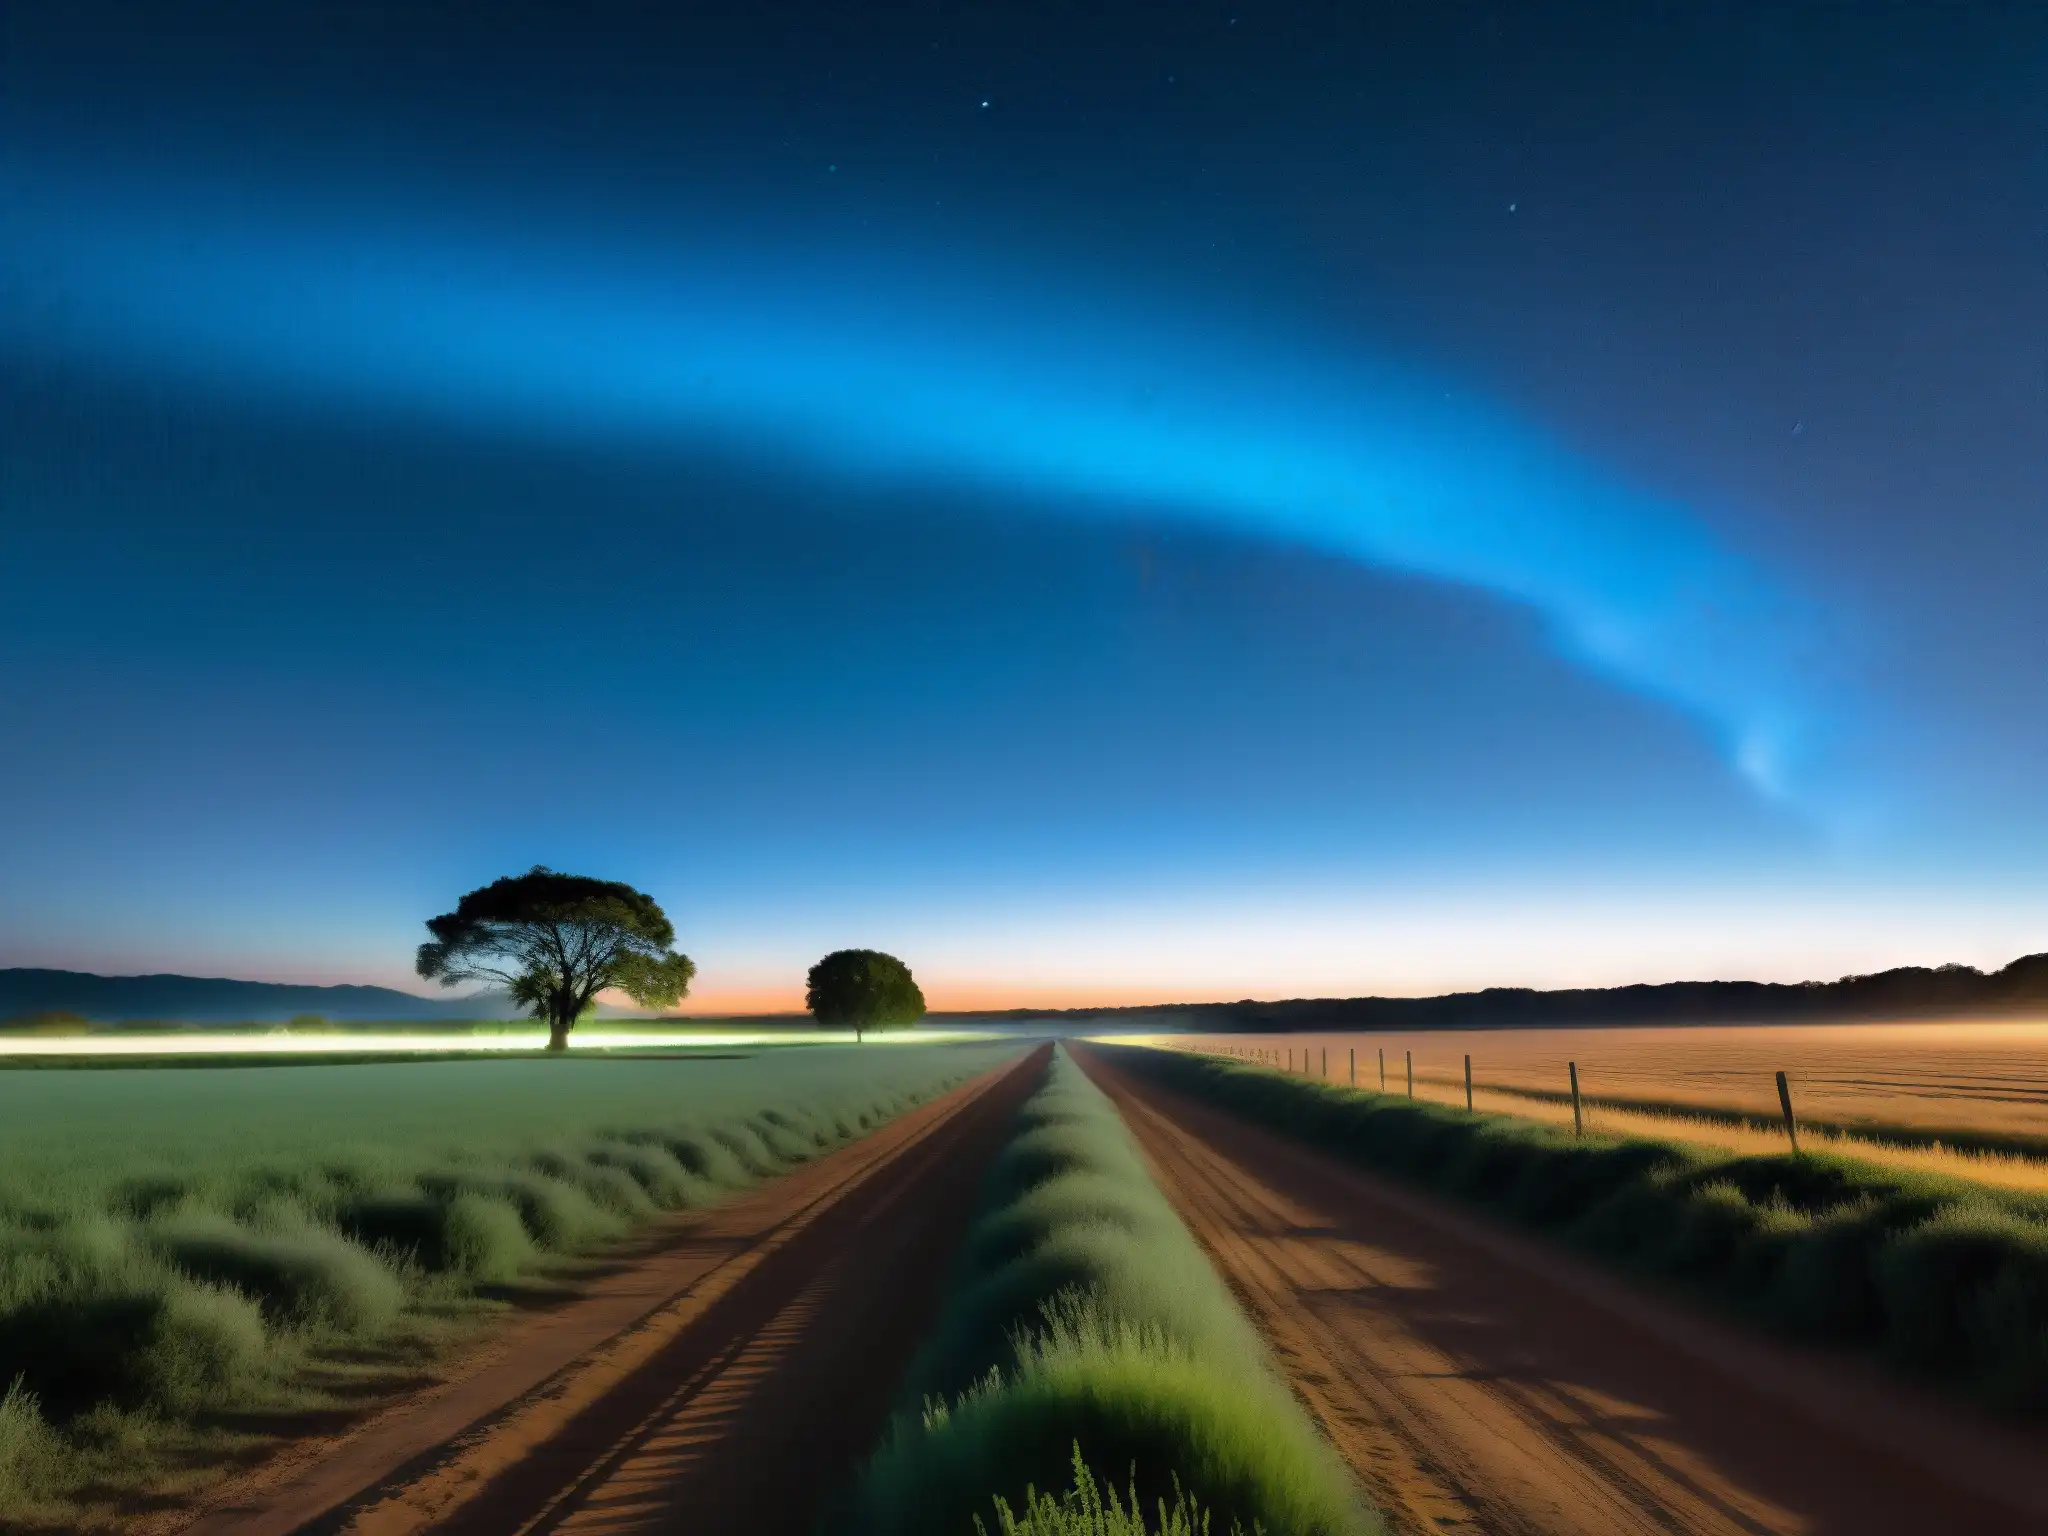 Imagen nocturna de paisaje rural argentino con el misterioso fenómeno natural de la luz mala emanando del suelo, creando un aura de leyenda y misticismo